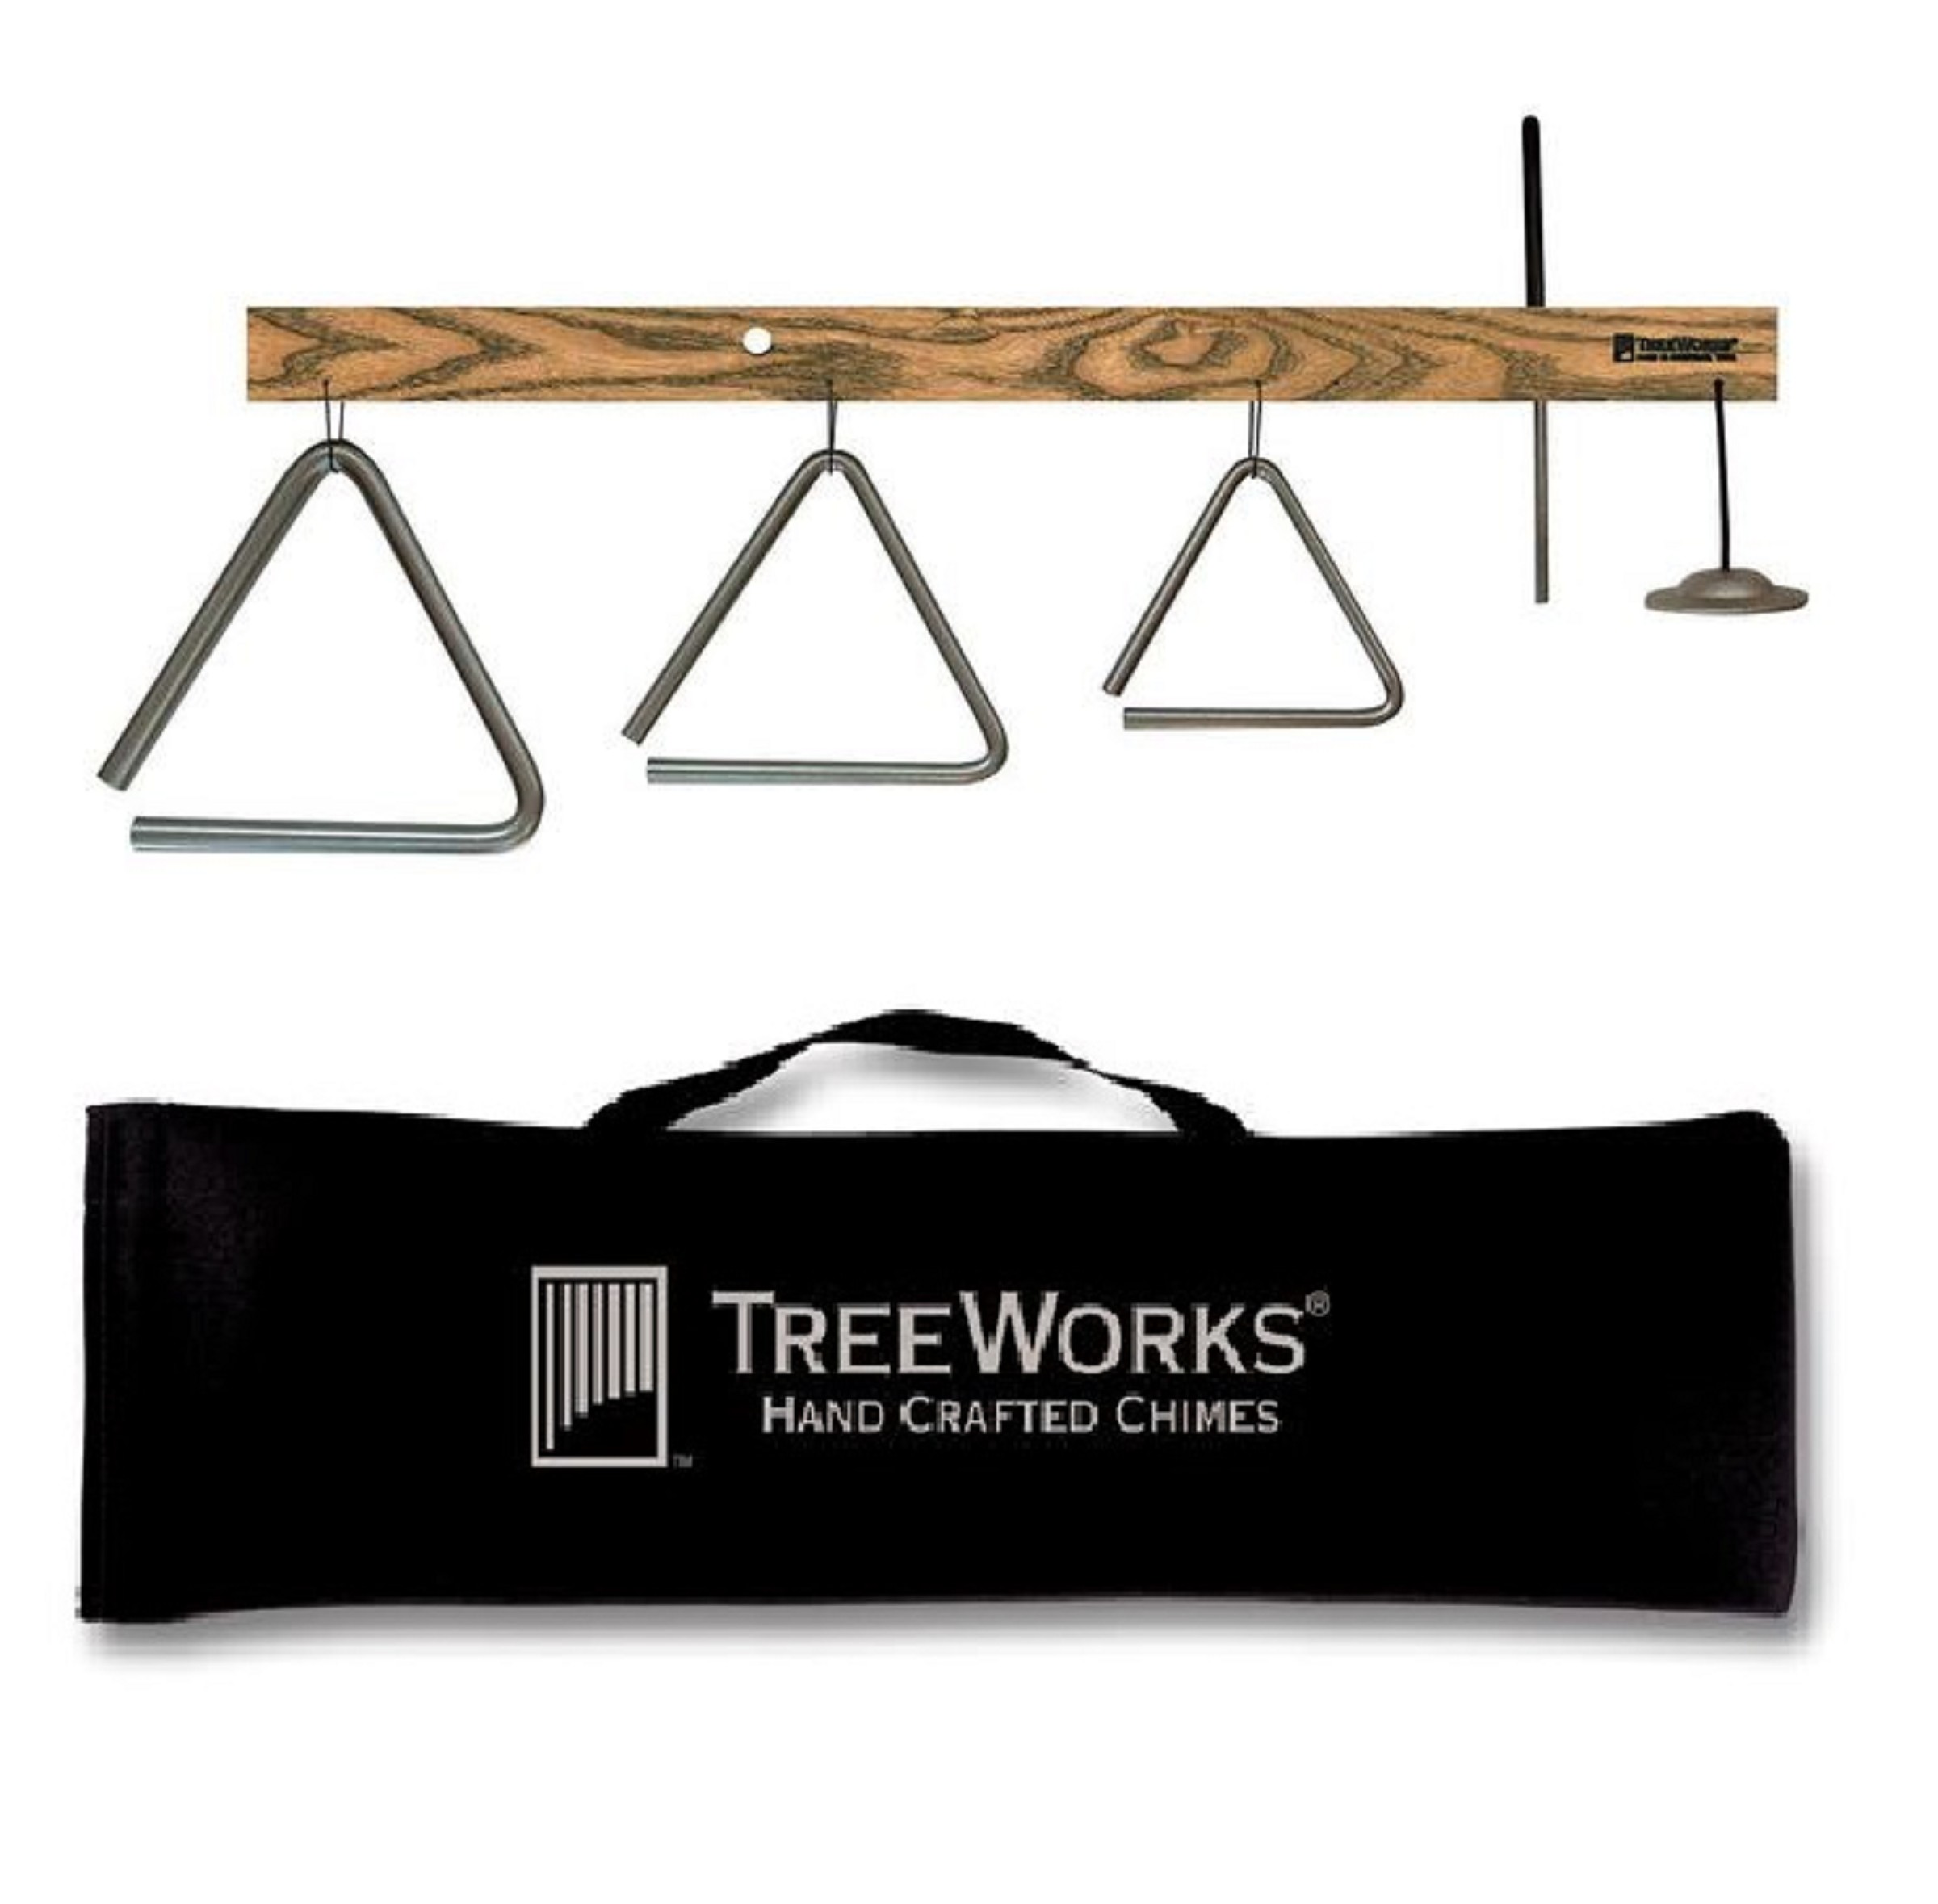 TreeWorks TRE04TT TriangleTree + LG24 Bag